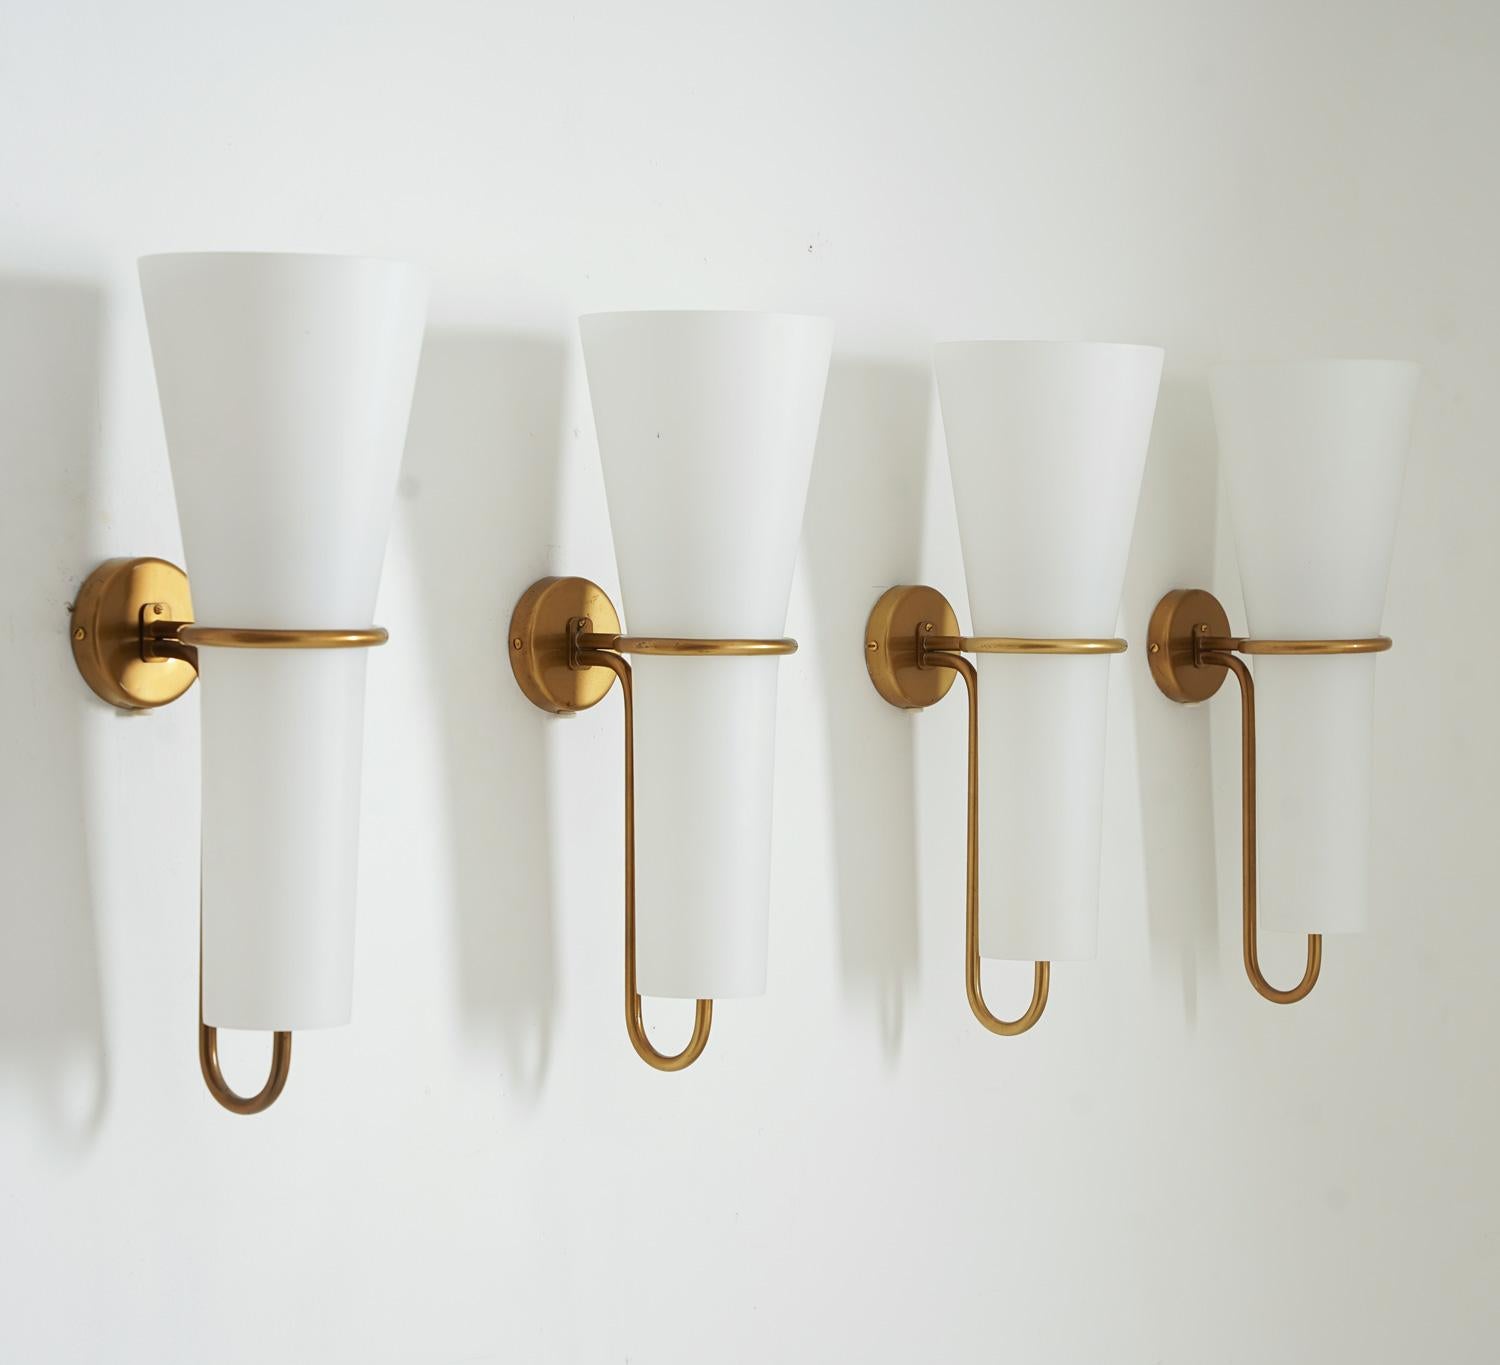 Seltene Wandleuchter von Hans-Agne Jakobsson für Arnold Wiig Fabrikker, Norwegen. 
Diese Lampen haben eine Lichtquelle, die von einem großen Opalglasschirm verdeckt wird. Der Schirm wird von einem Messingrahmen gehalten.
Zustand: Sehr guter